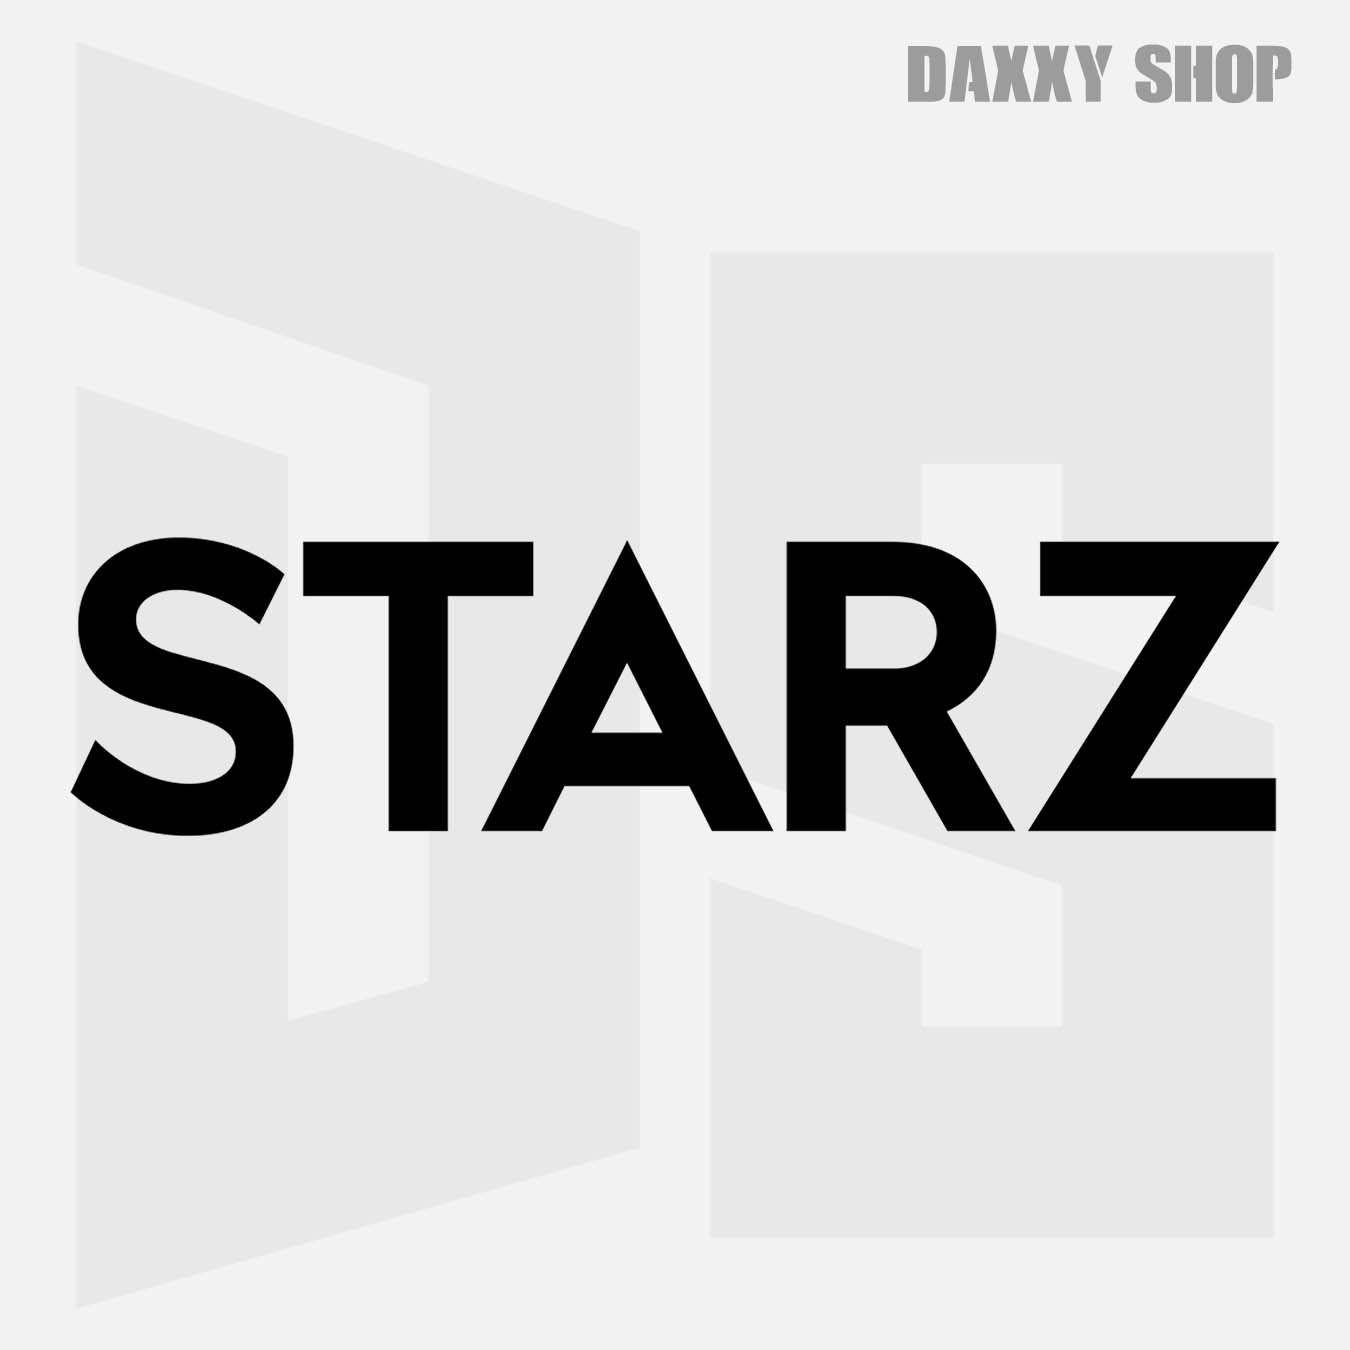 STARZ - daxxyshop.com